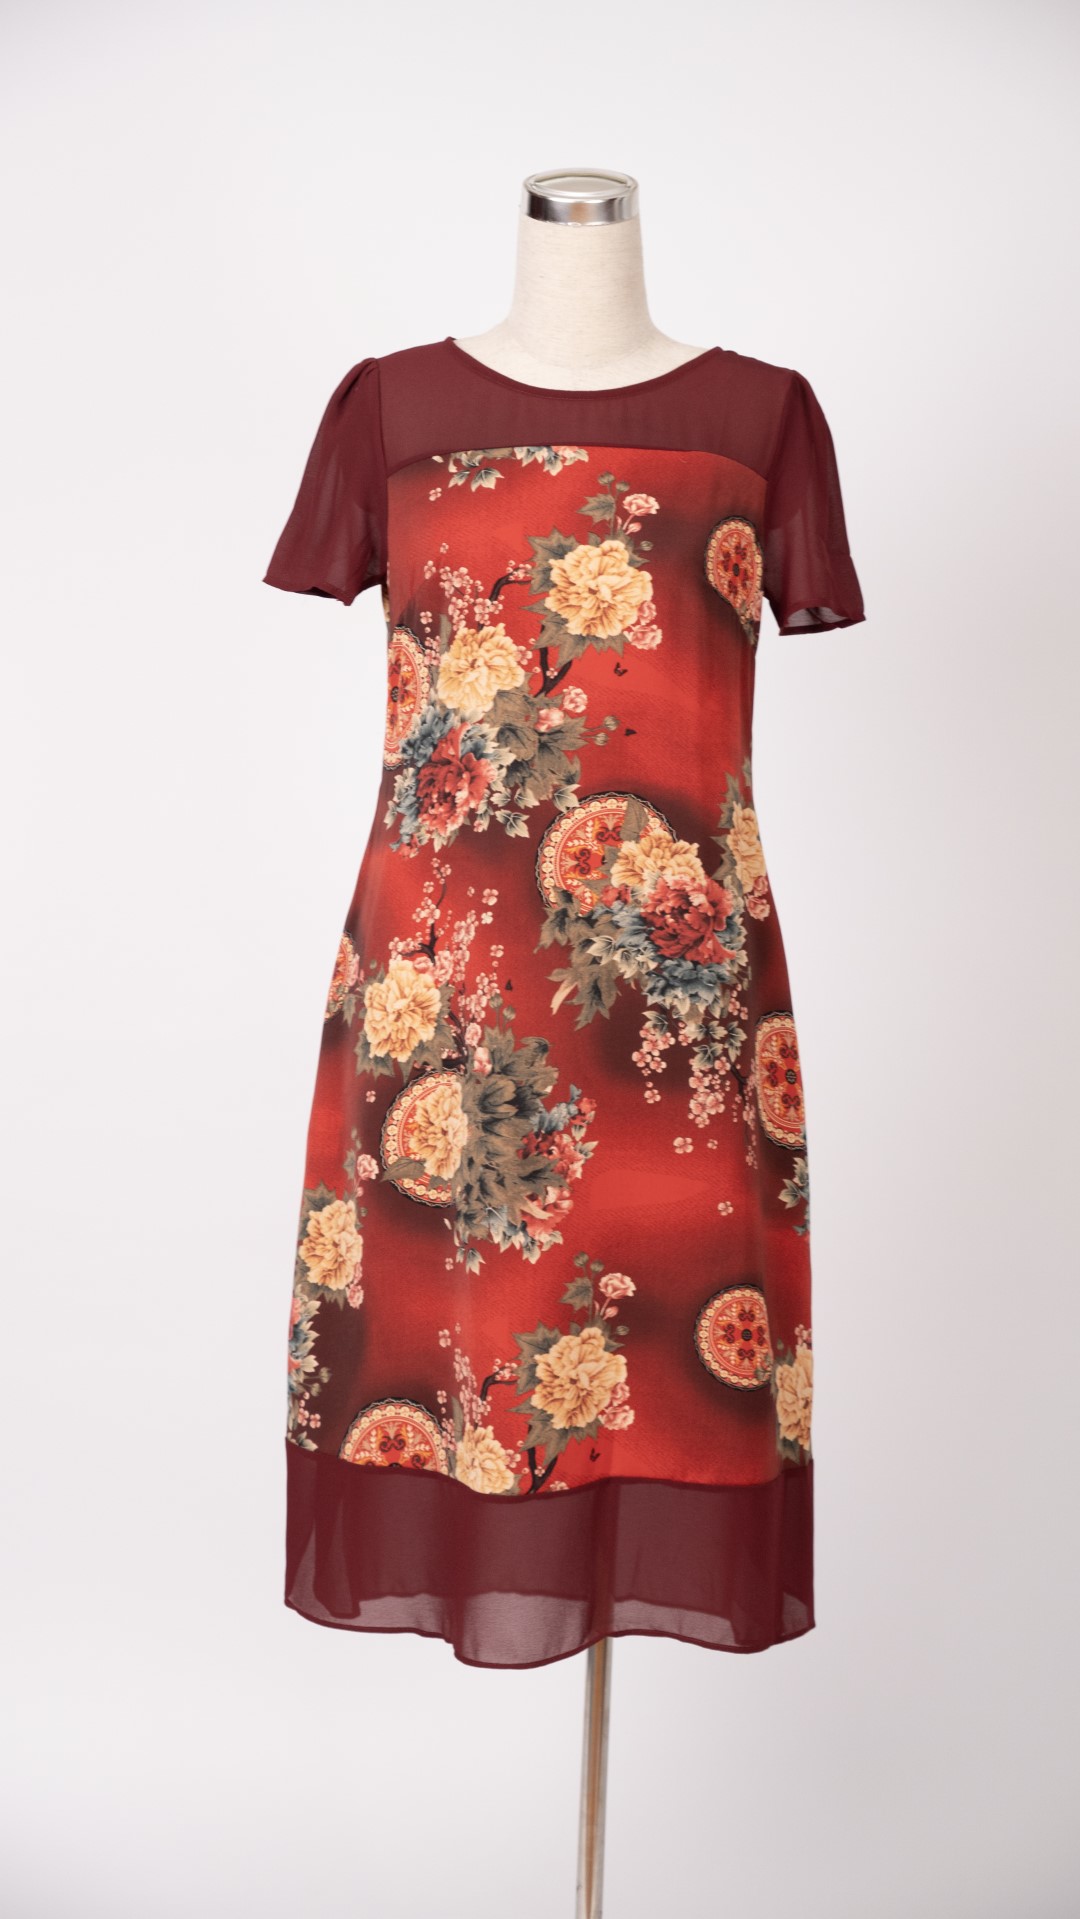 Mới) Mã G8994 Giá 1000K: Váy Đầm Liền Thân Nữ Xieny Big Size Ngoại Cỡ Hàng  Mùa Hè Trung Niên Họa Tiết Hoa Thời Trang Nữ Chất Liệu G03 Sản Phẩm Mới, (